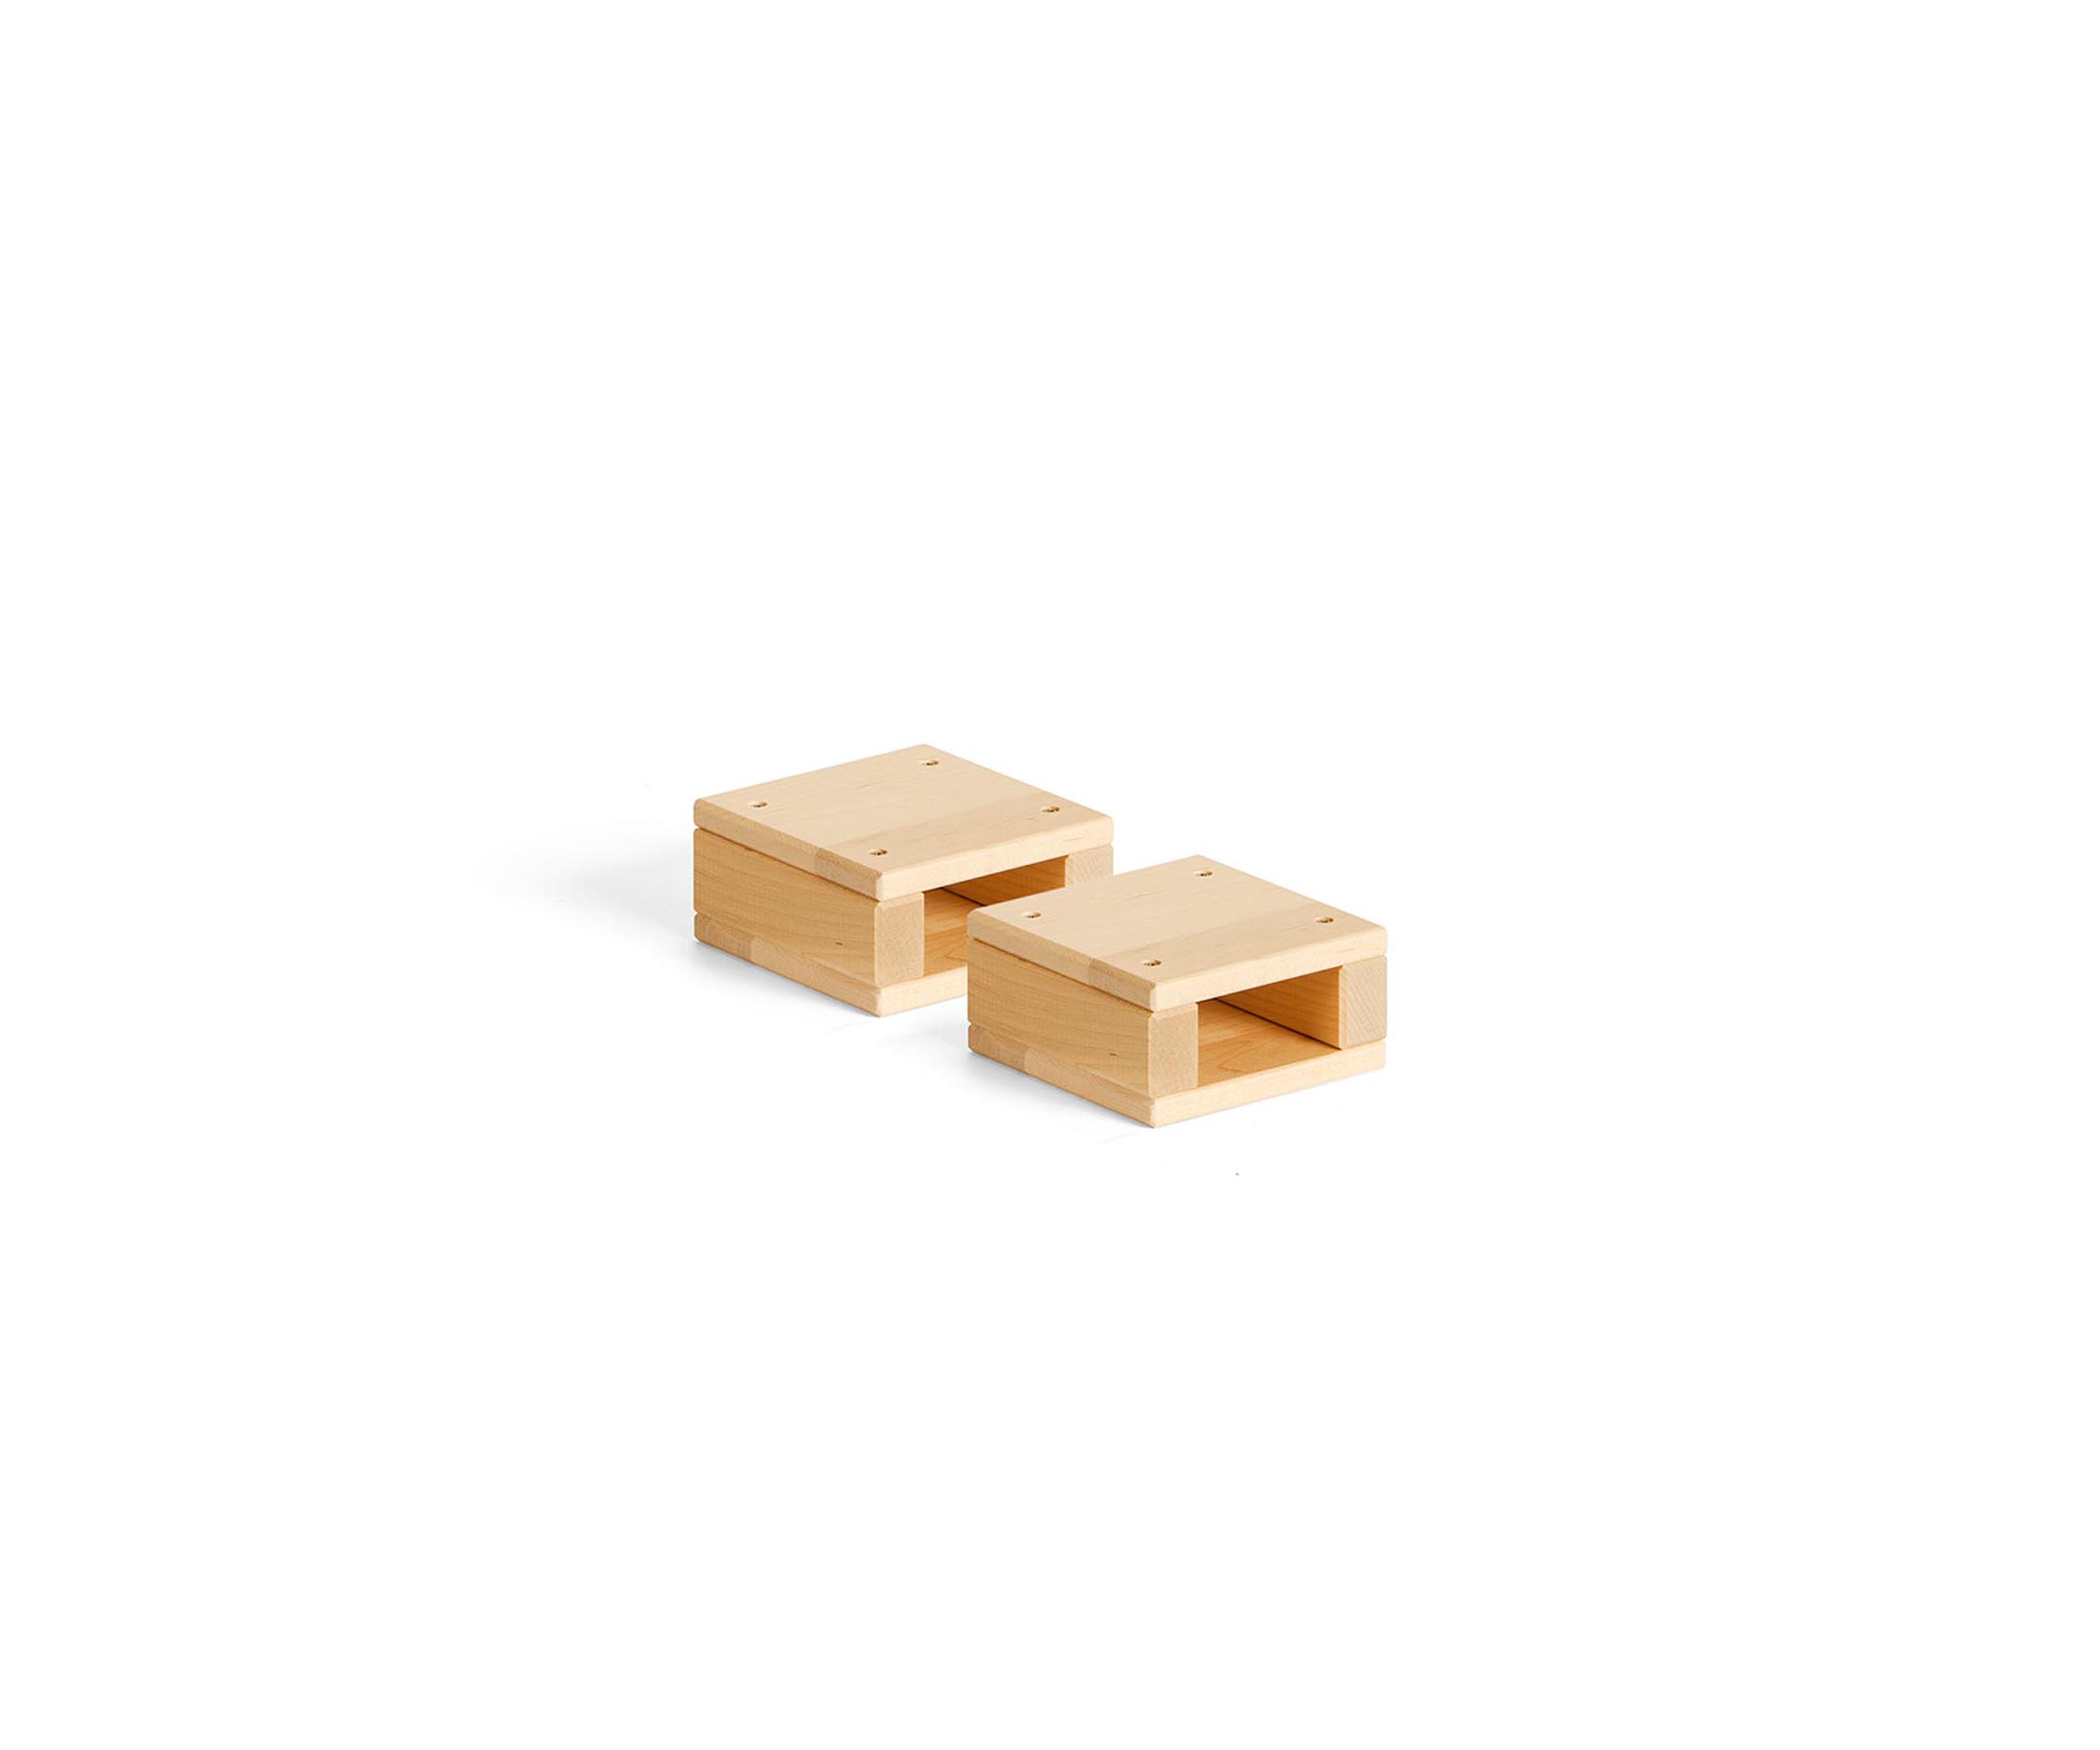 2 Mini hollow block squares